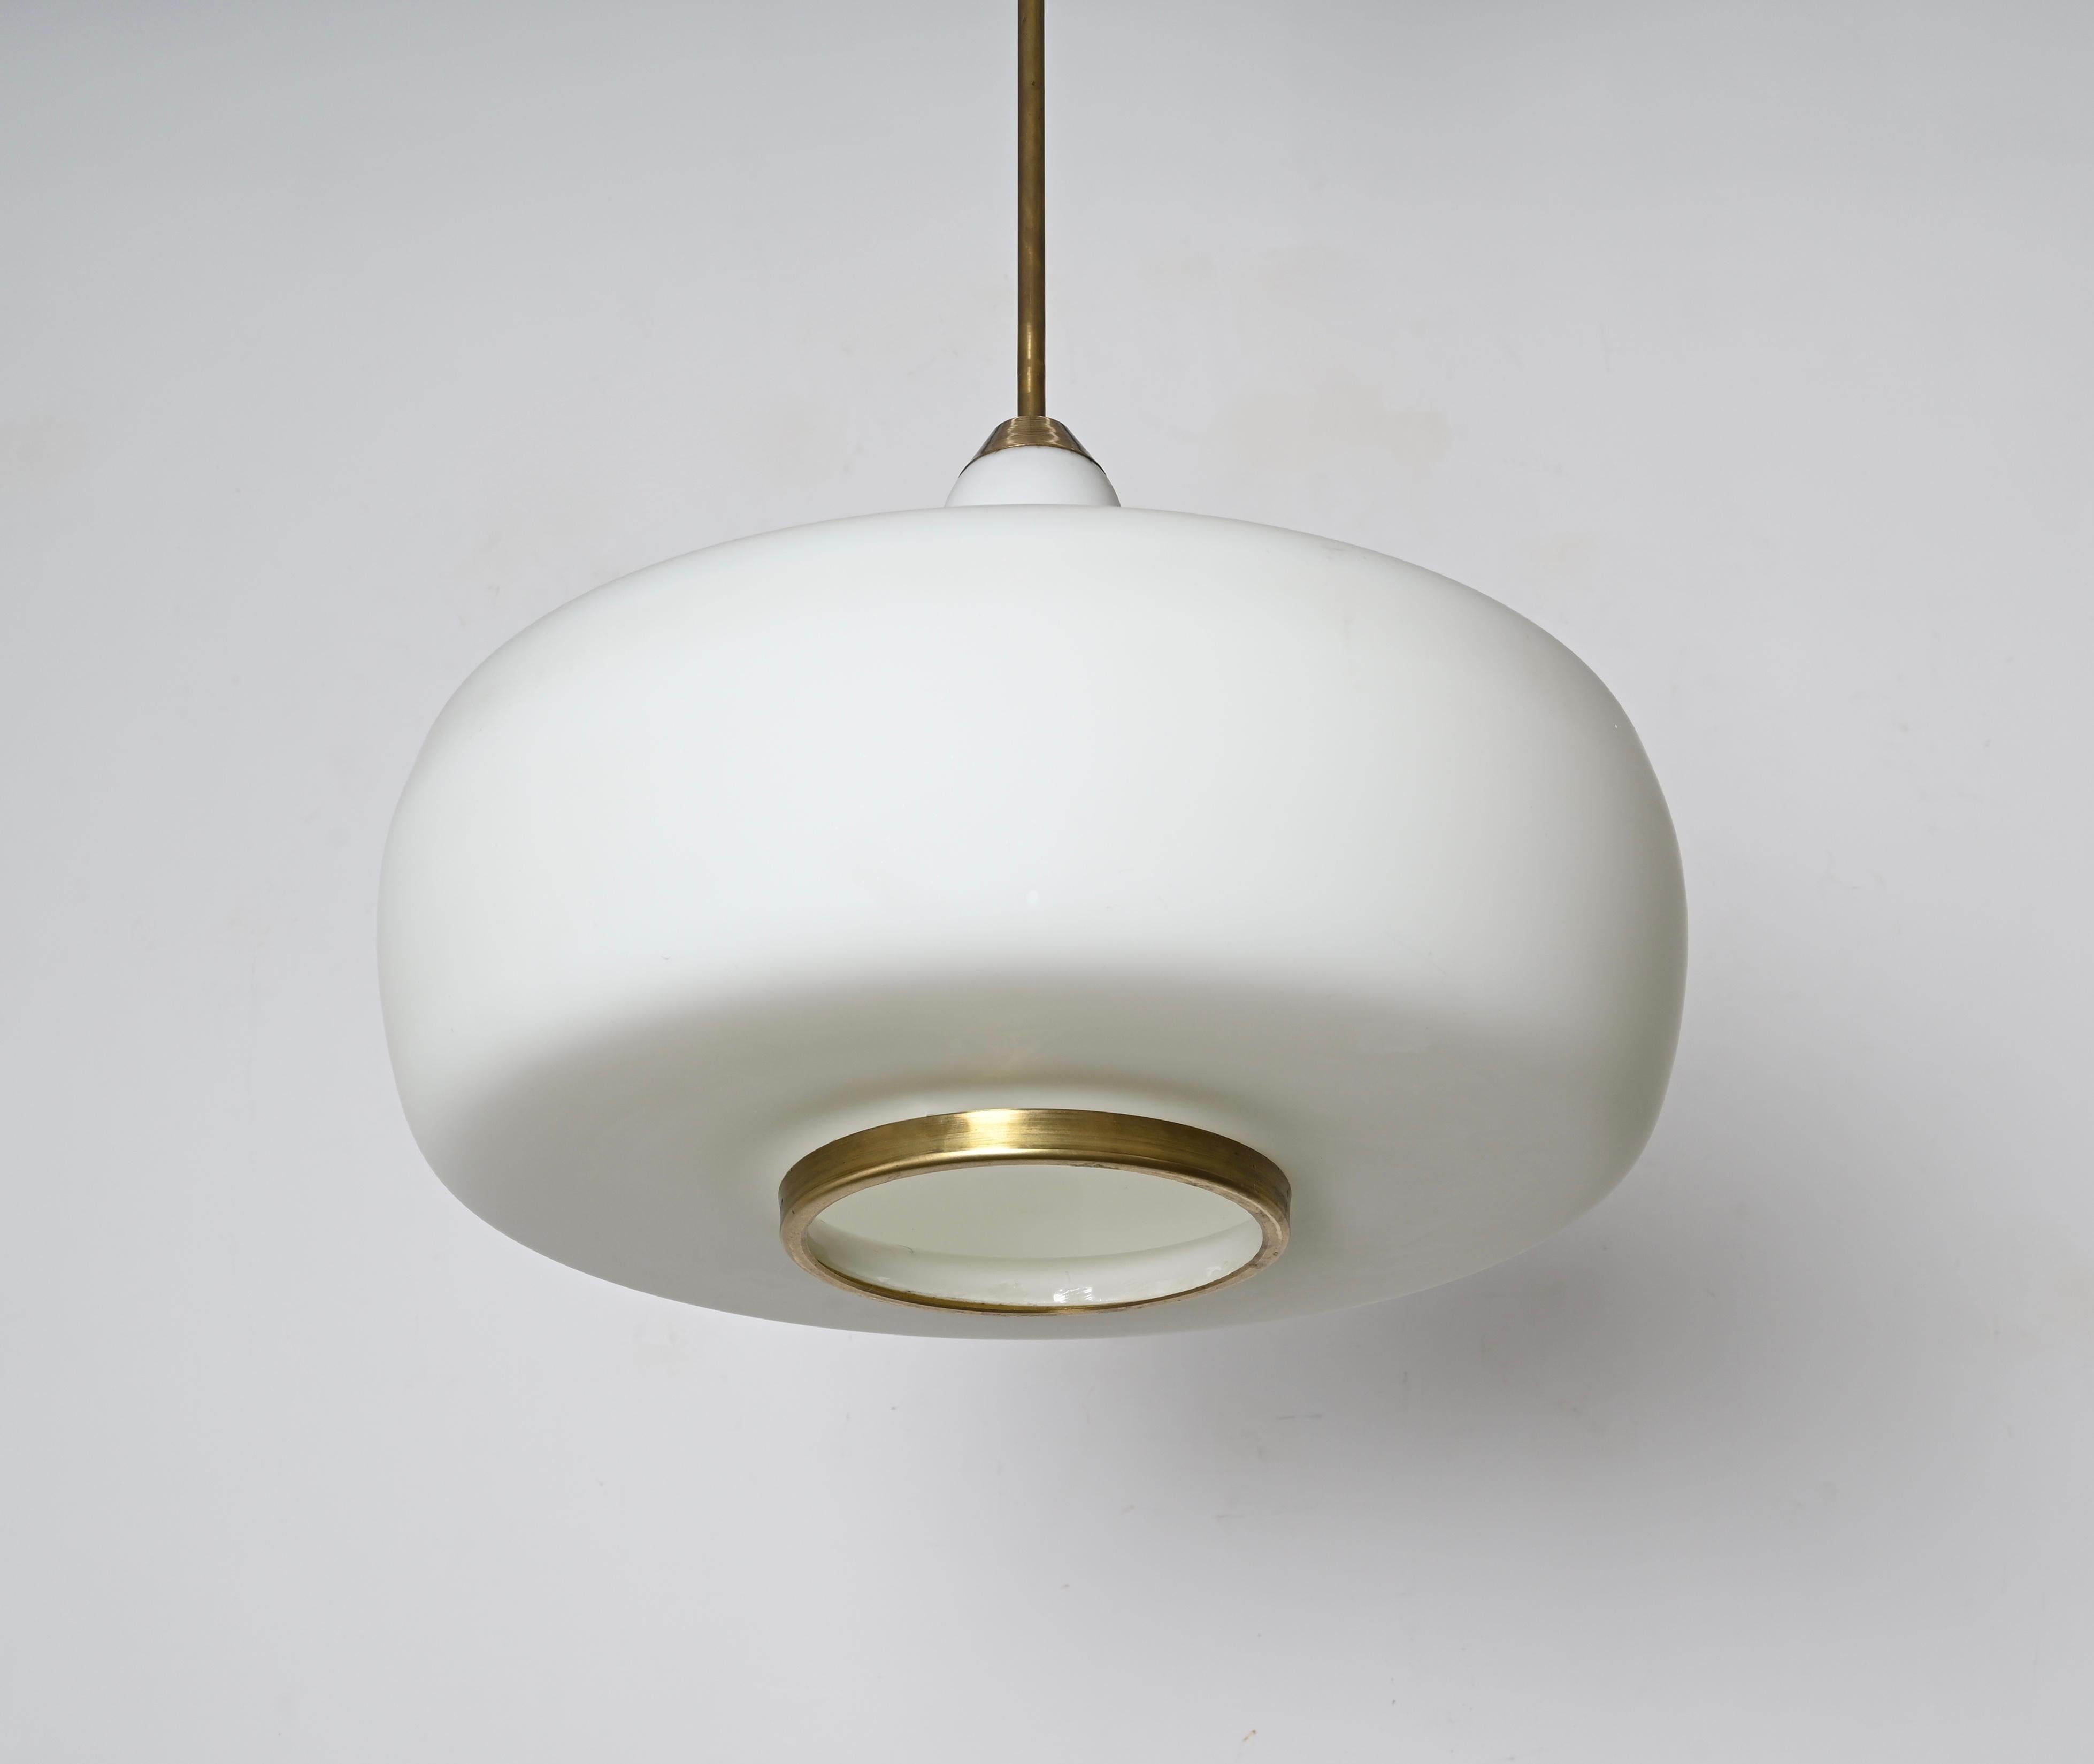 Stilnovo Opal Glass and Brass Chandelier Ceiling Lamp, Italian Lighting 1960s For Sale 1